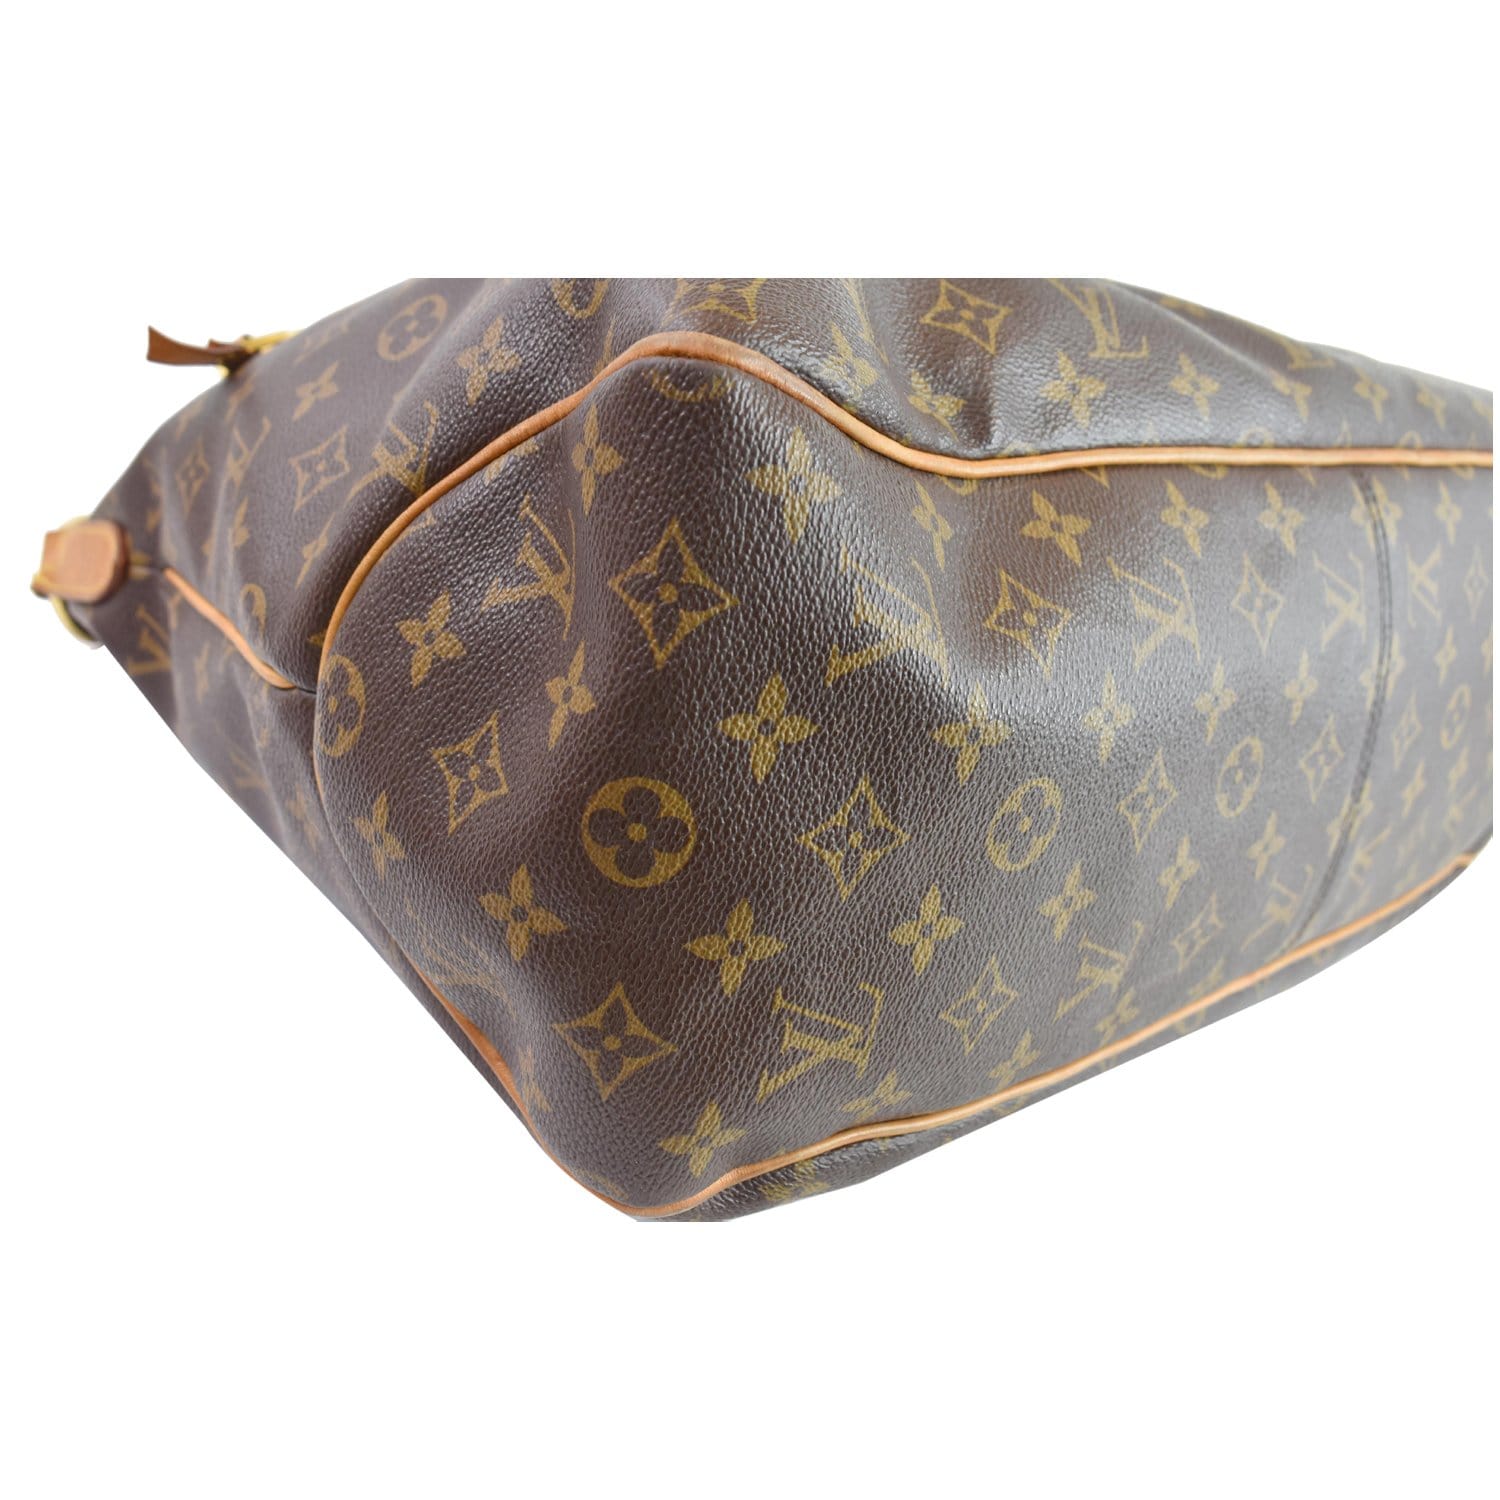 Louis Vuitton, Bags, Vintage 98s Louis Vuitton Monogram Bag